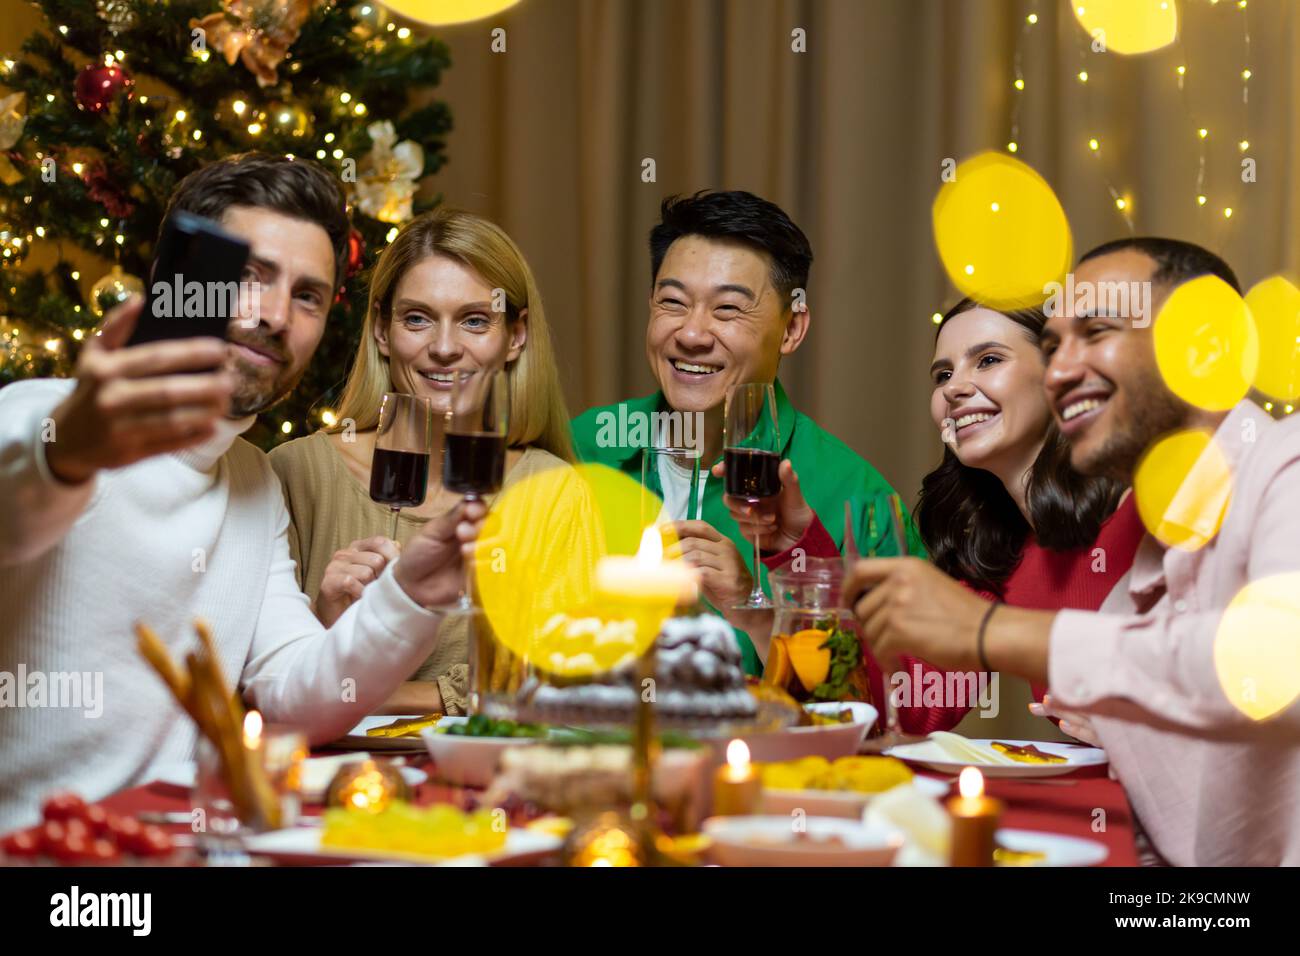 Une compagnie de personnes interraciales célébrant ensemble le nouvel an, assis à la table des fêtes. L'homme tient le téléphone, tout le monde parle lors d'un appel vidéo avec des amis, salutation, sourire. Banque D'Images